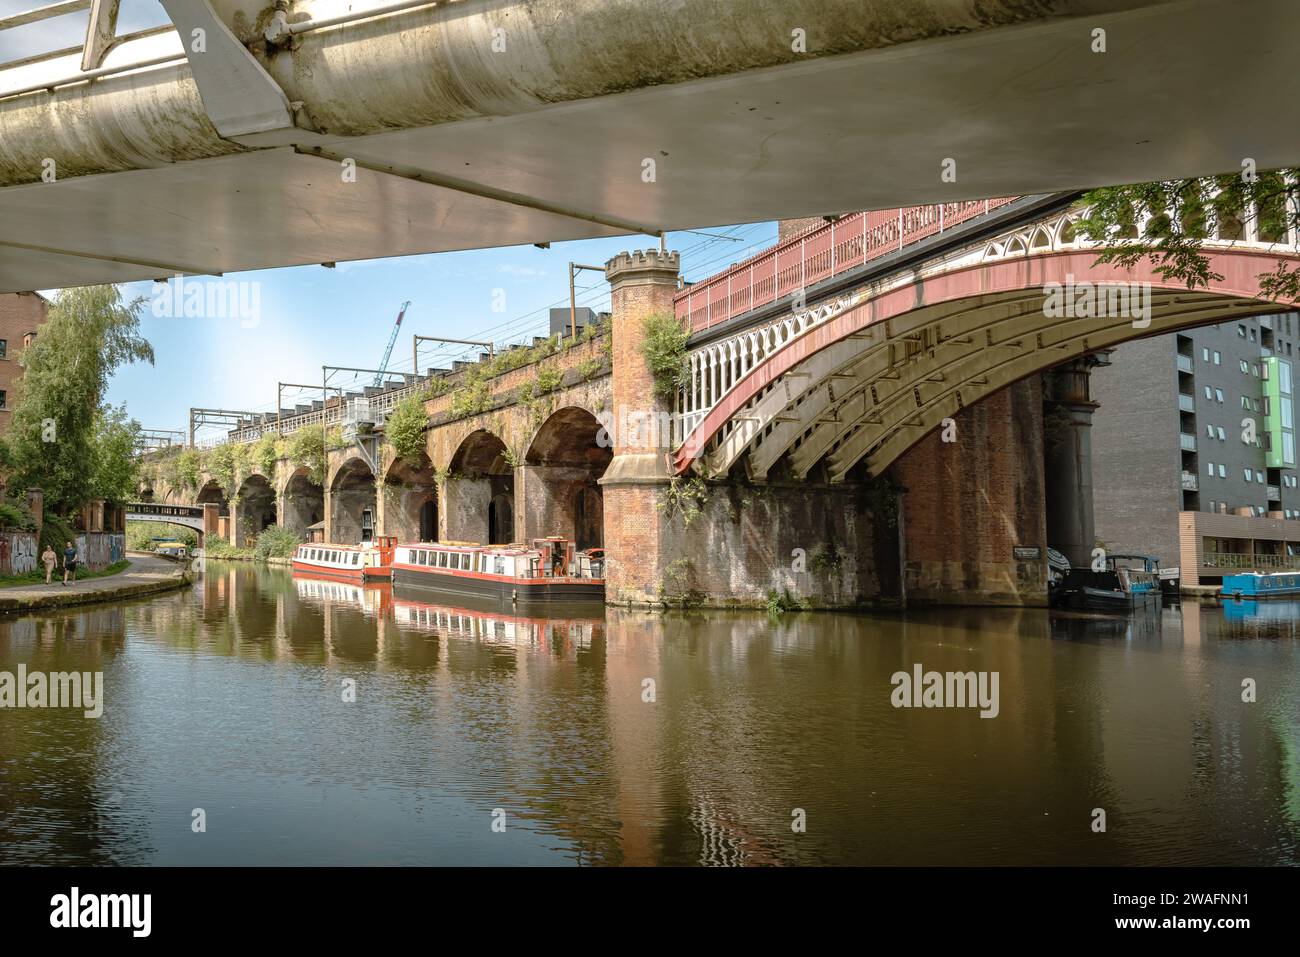 Il tranquillo Manchester Bridgwater Canal fiancheggiato da uno storico ponte ad arco. Fascino urbano in un ambiente tranquillo sul mare. Concetto di turismo di viaggio Foto Stock